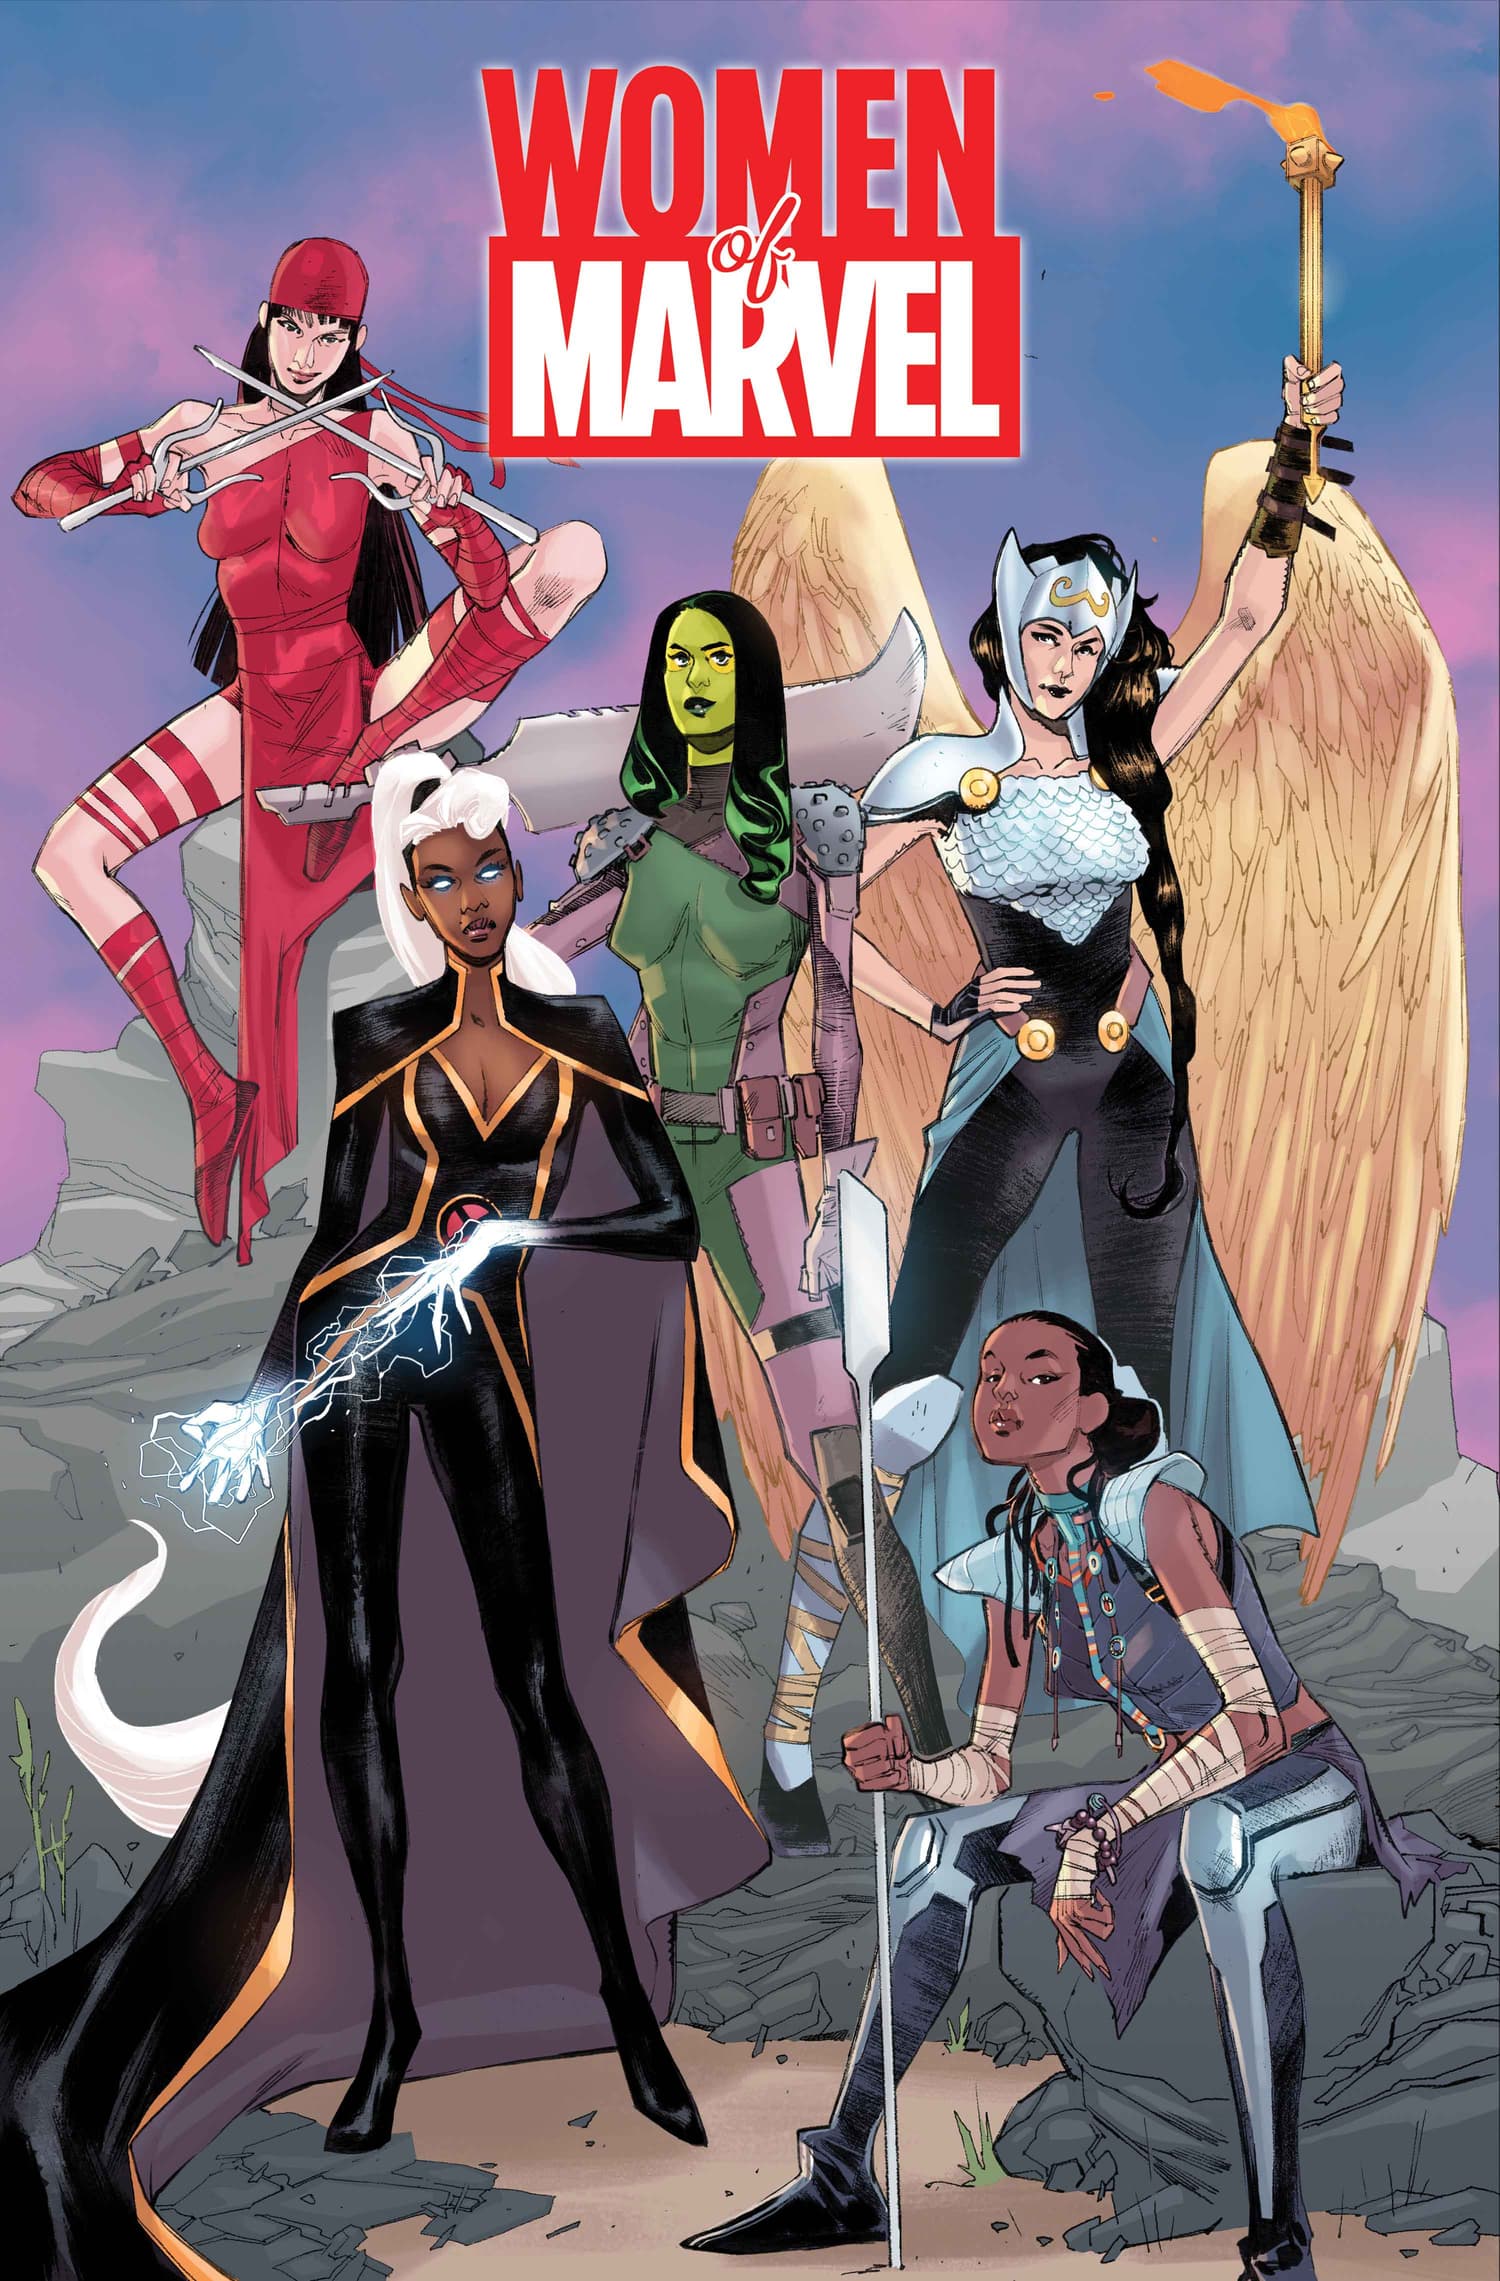 Women of Marvel #1